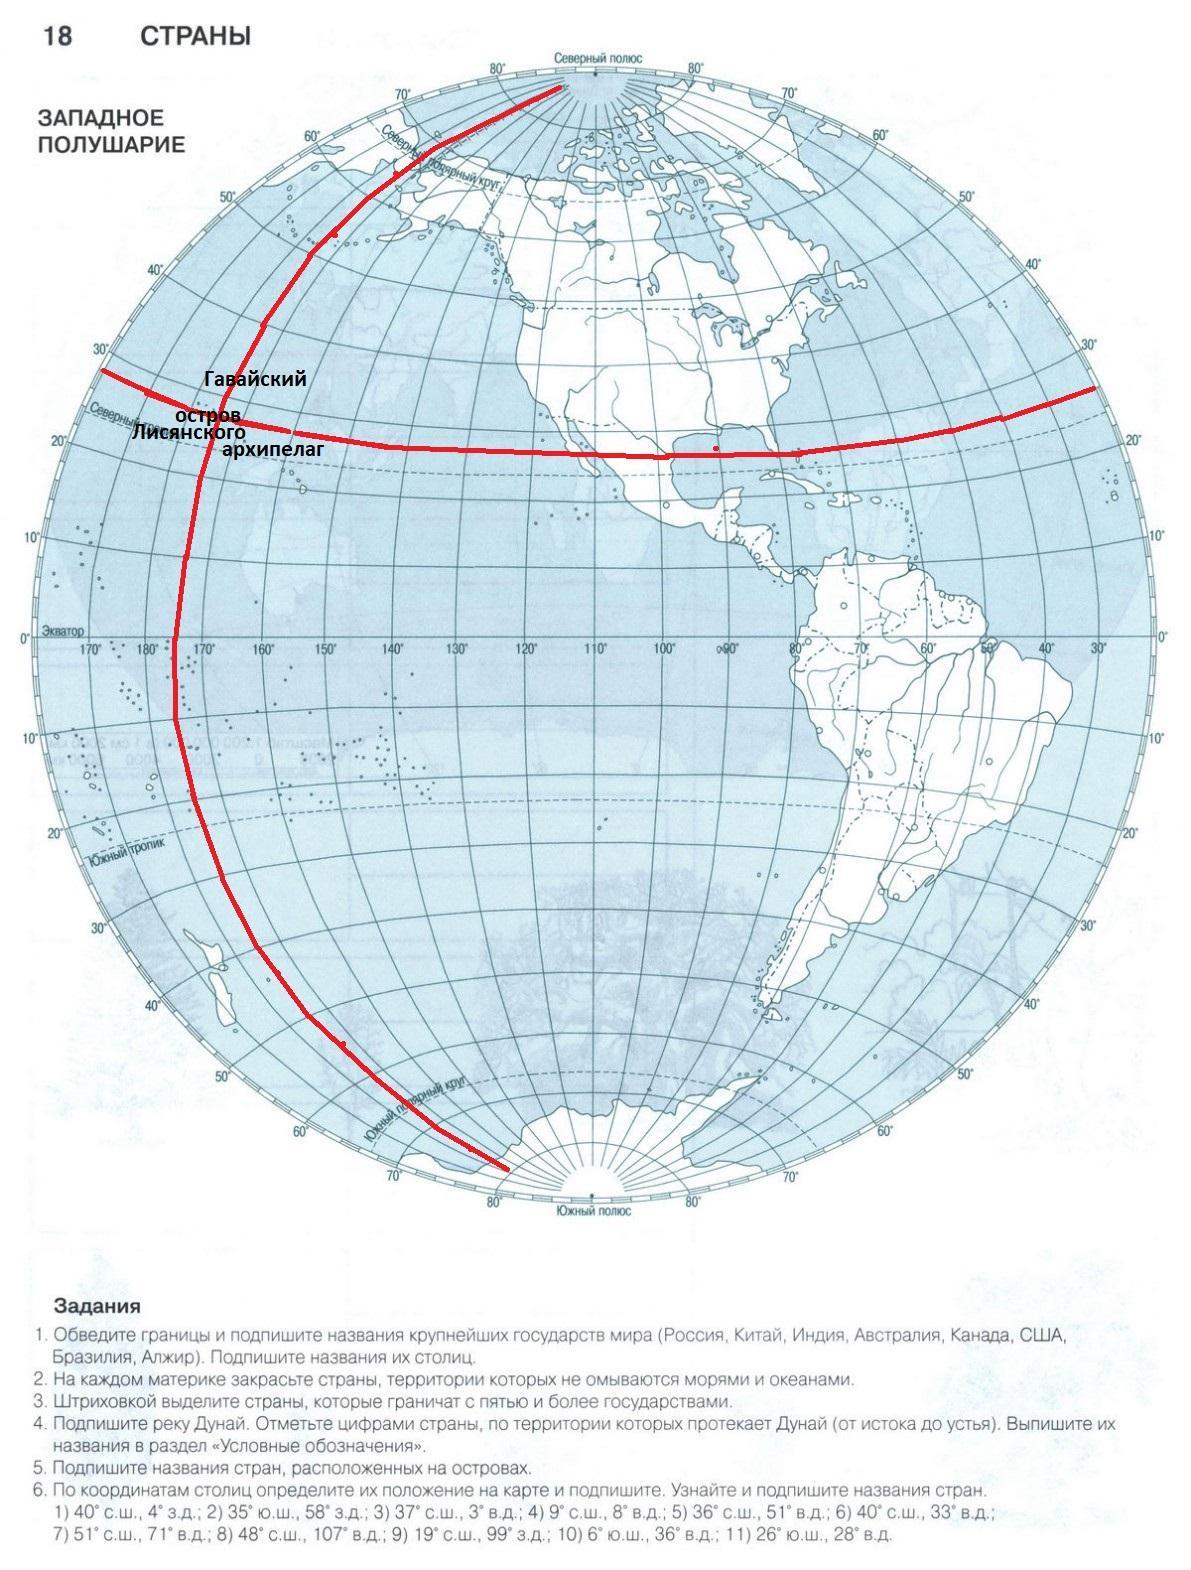 0 параллель на карте. Нулевой Меридиан на карте Западного полушария. Меридиан 180 градусов на контурной карте. Нулевой и 180 Меридиан на карте полушарий. 180 Меридиан на карте полушарий.